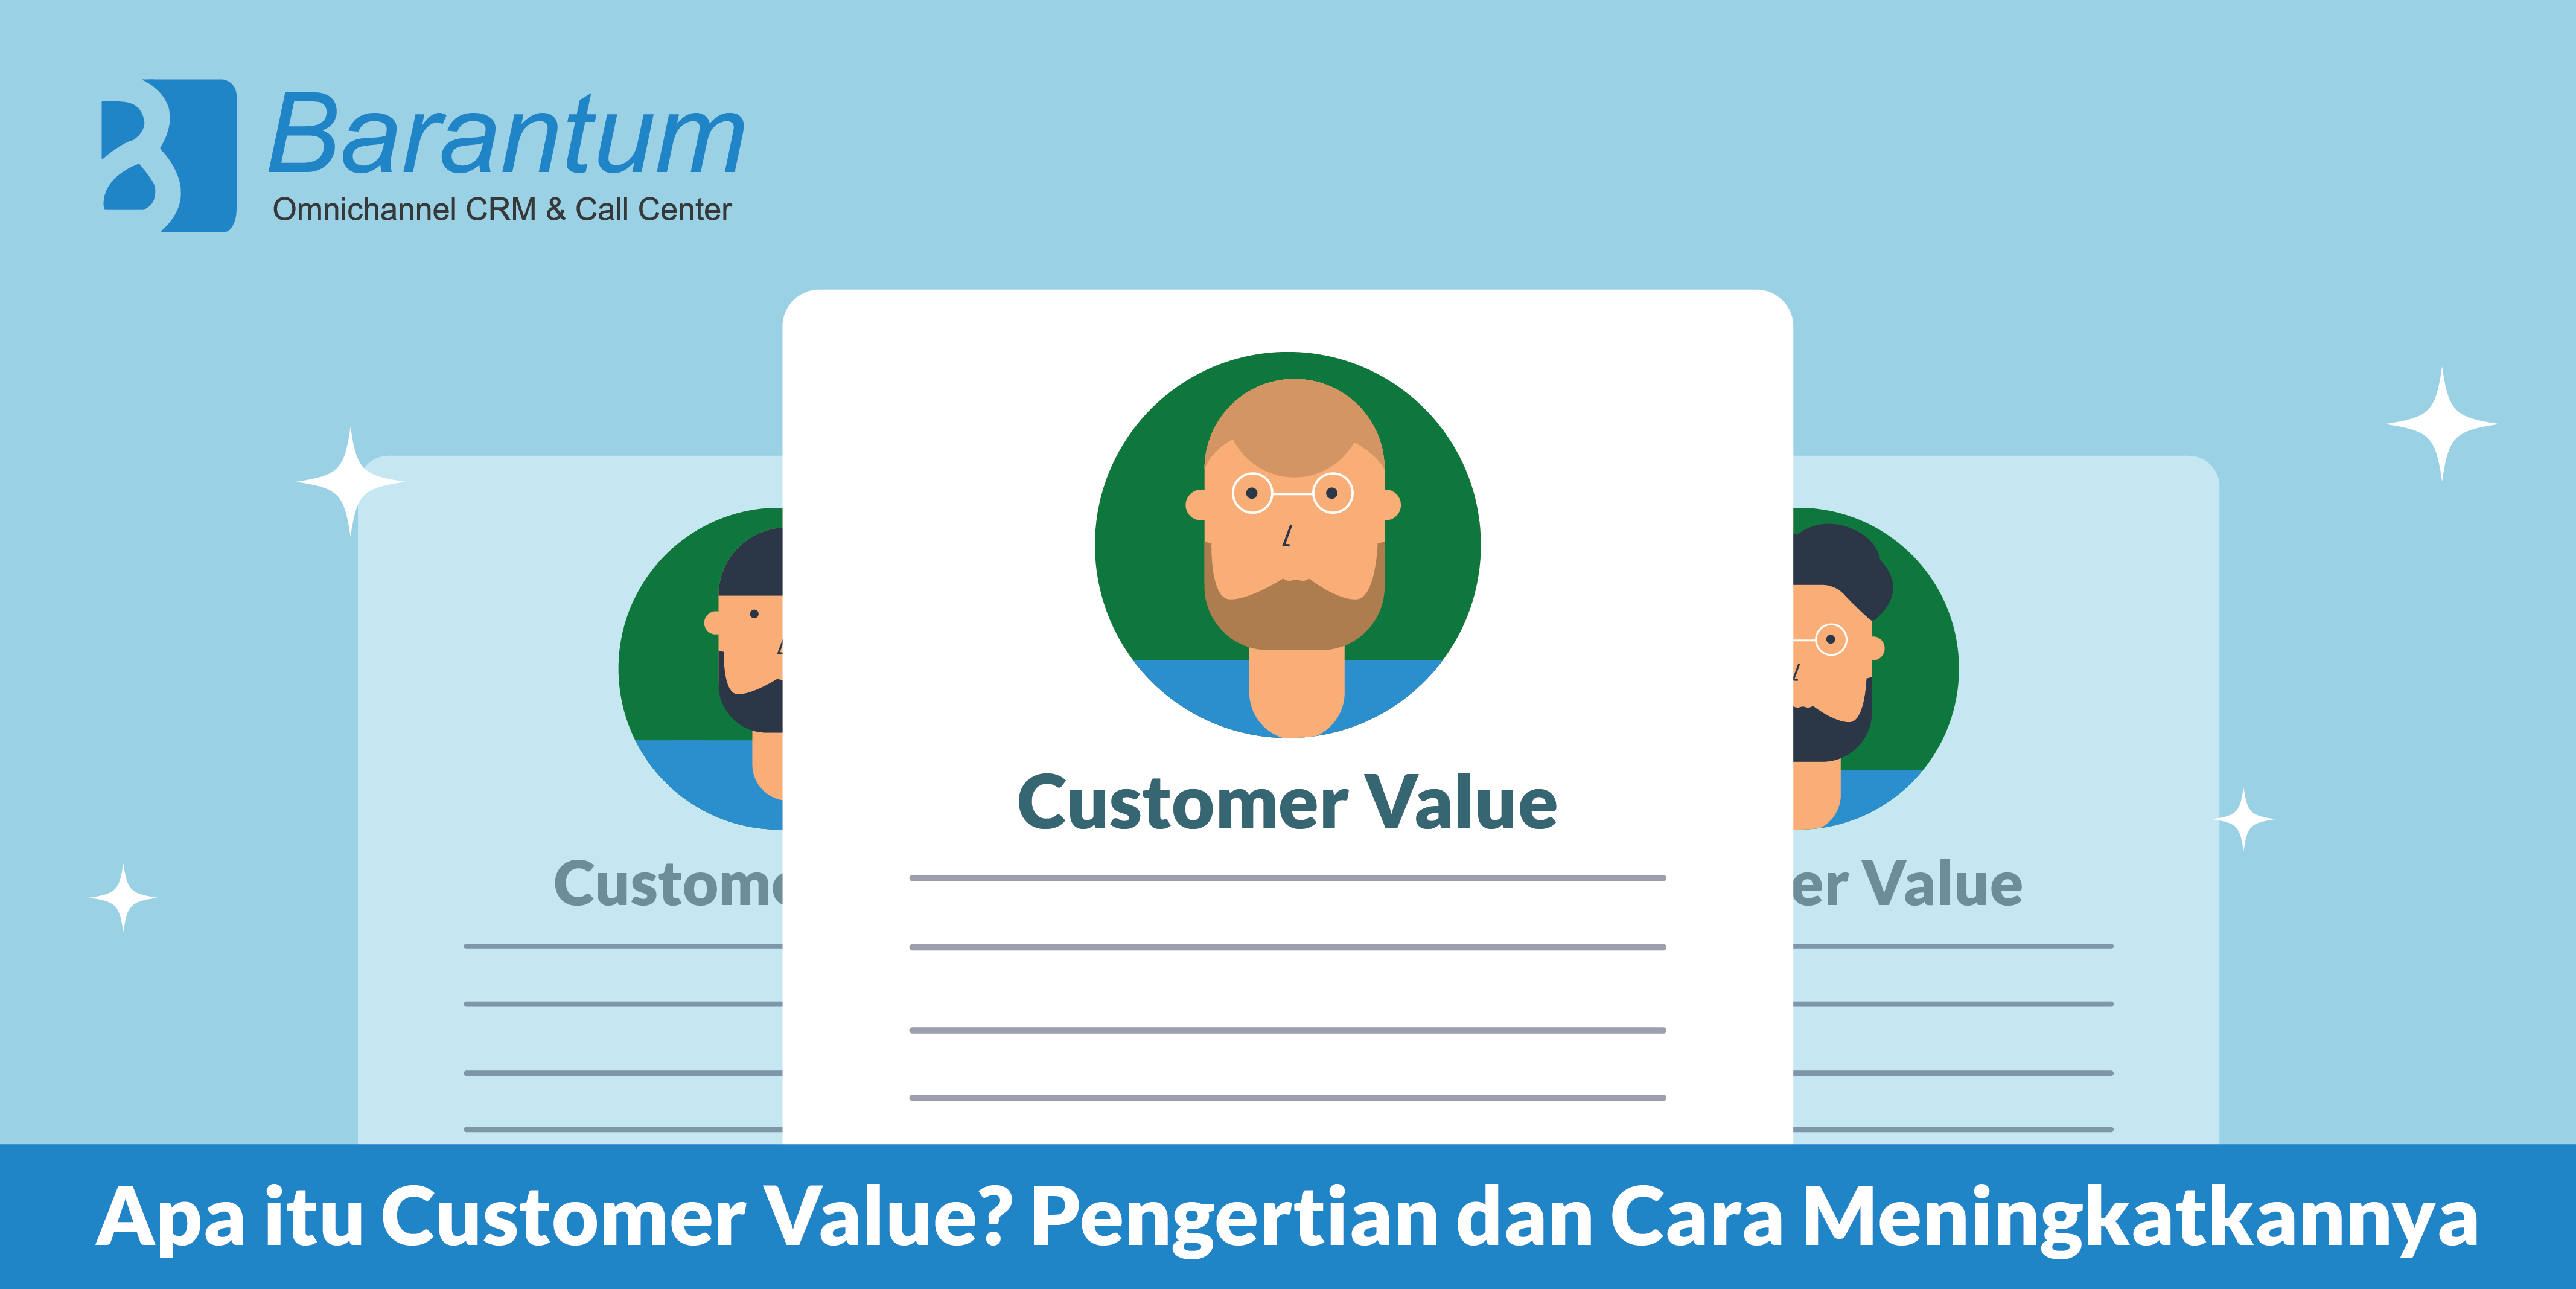 customer value adalah